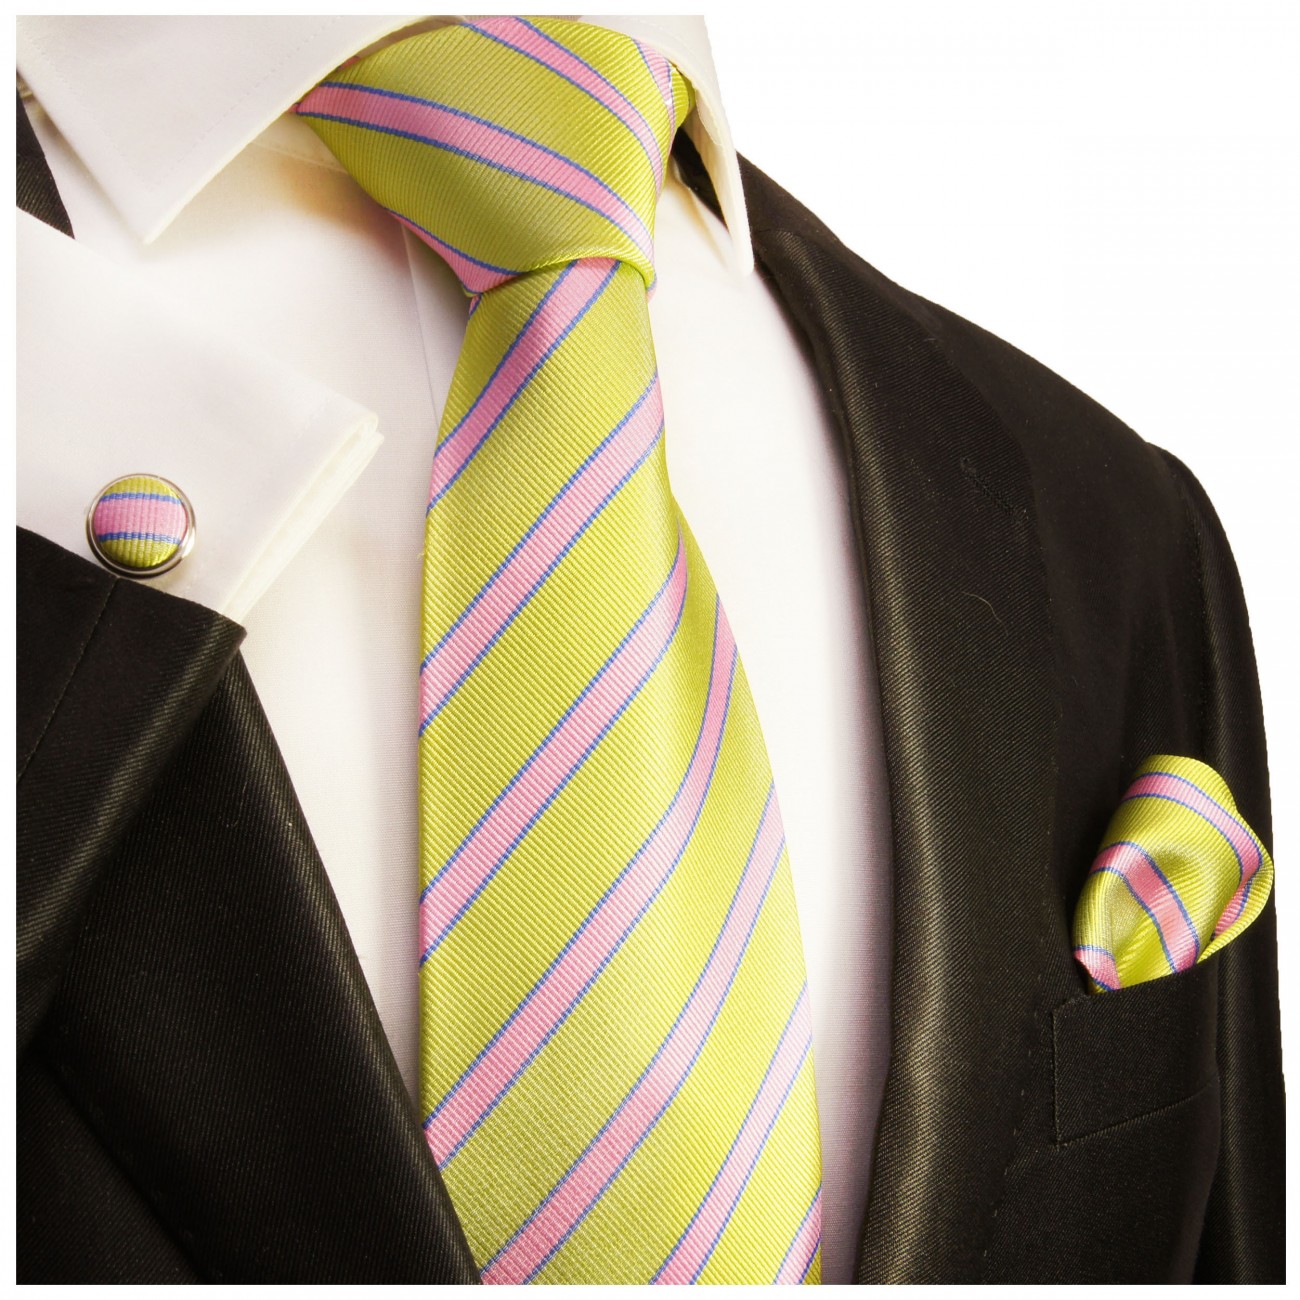 Krawatte grün pink mit Einstecktuch und Manschettenknöpfen